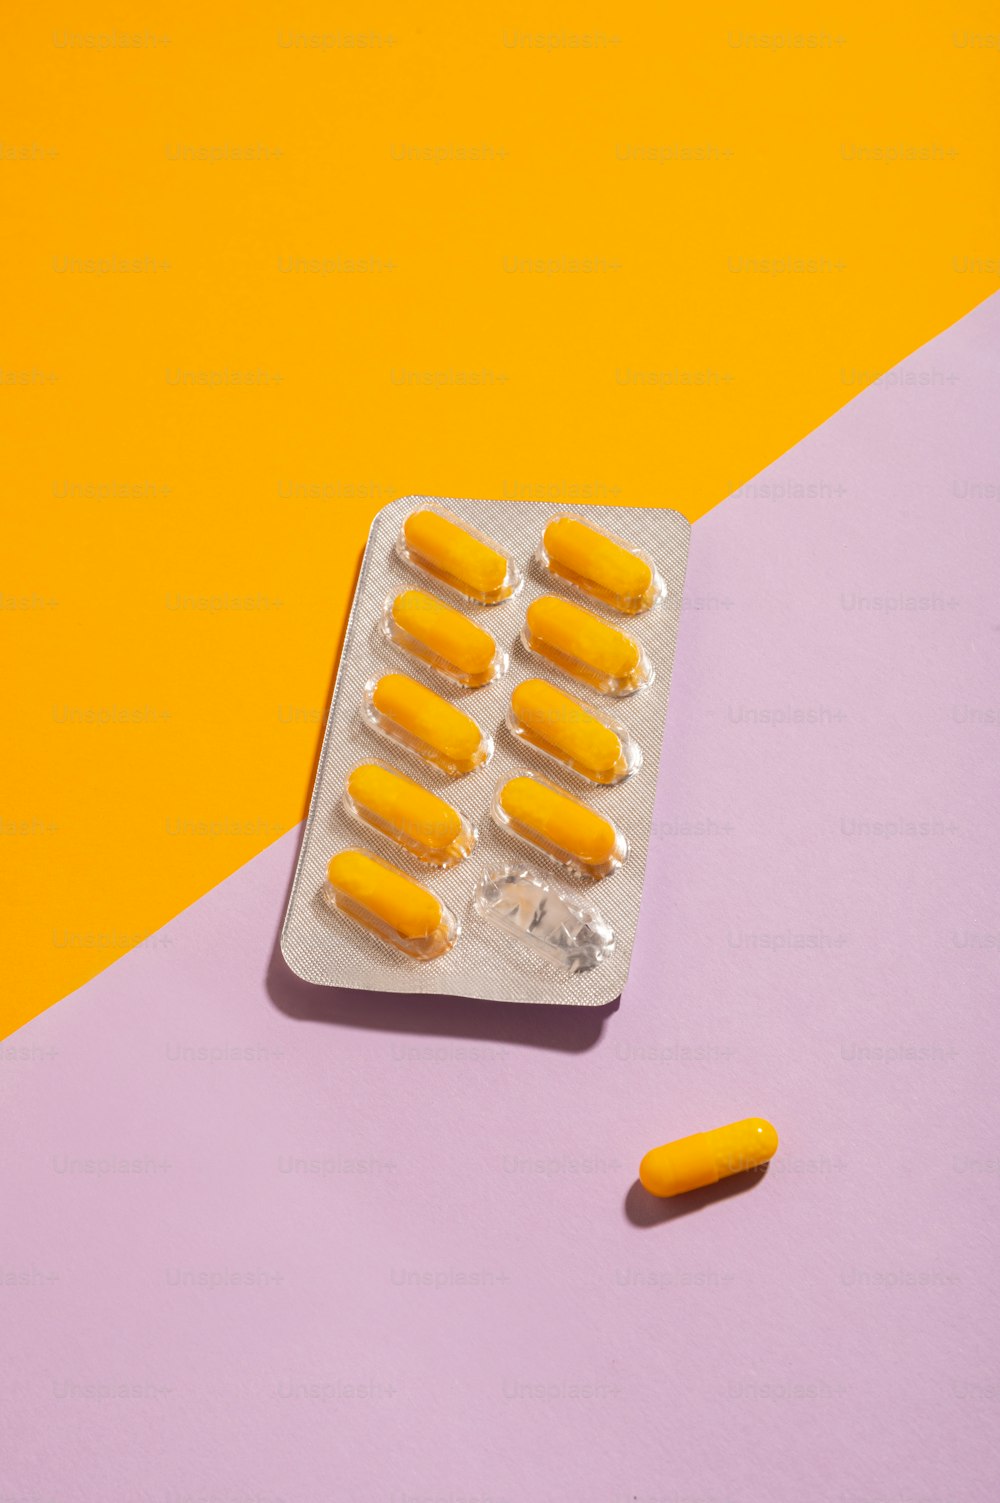 Un aggeggio pieno di pillole gialle su uno sfondo rosa e giallo